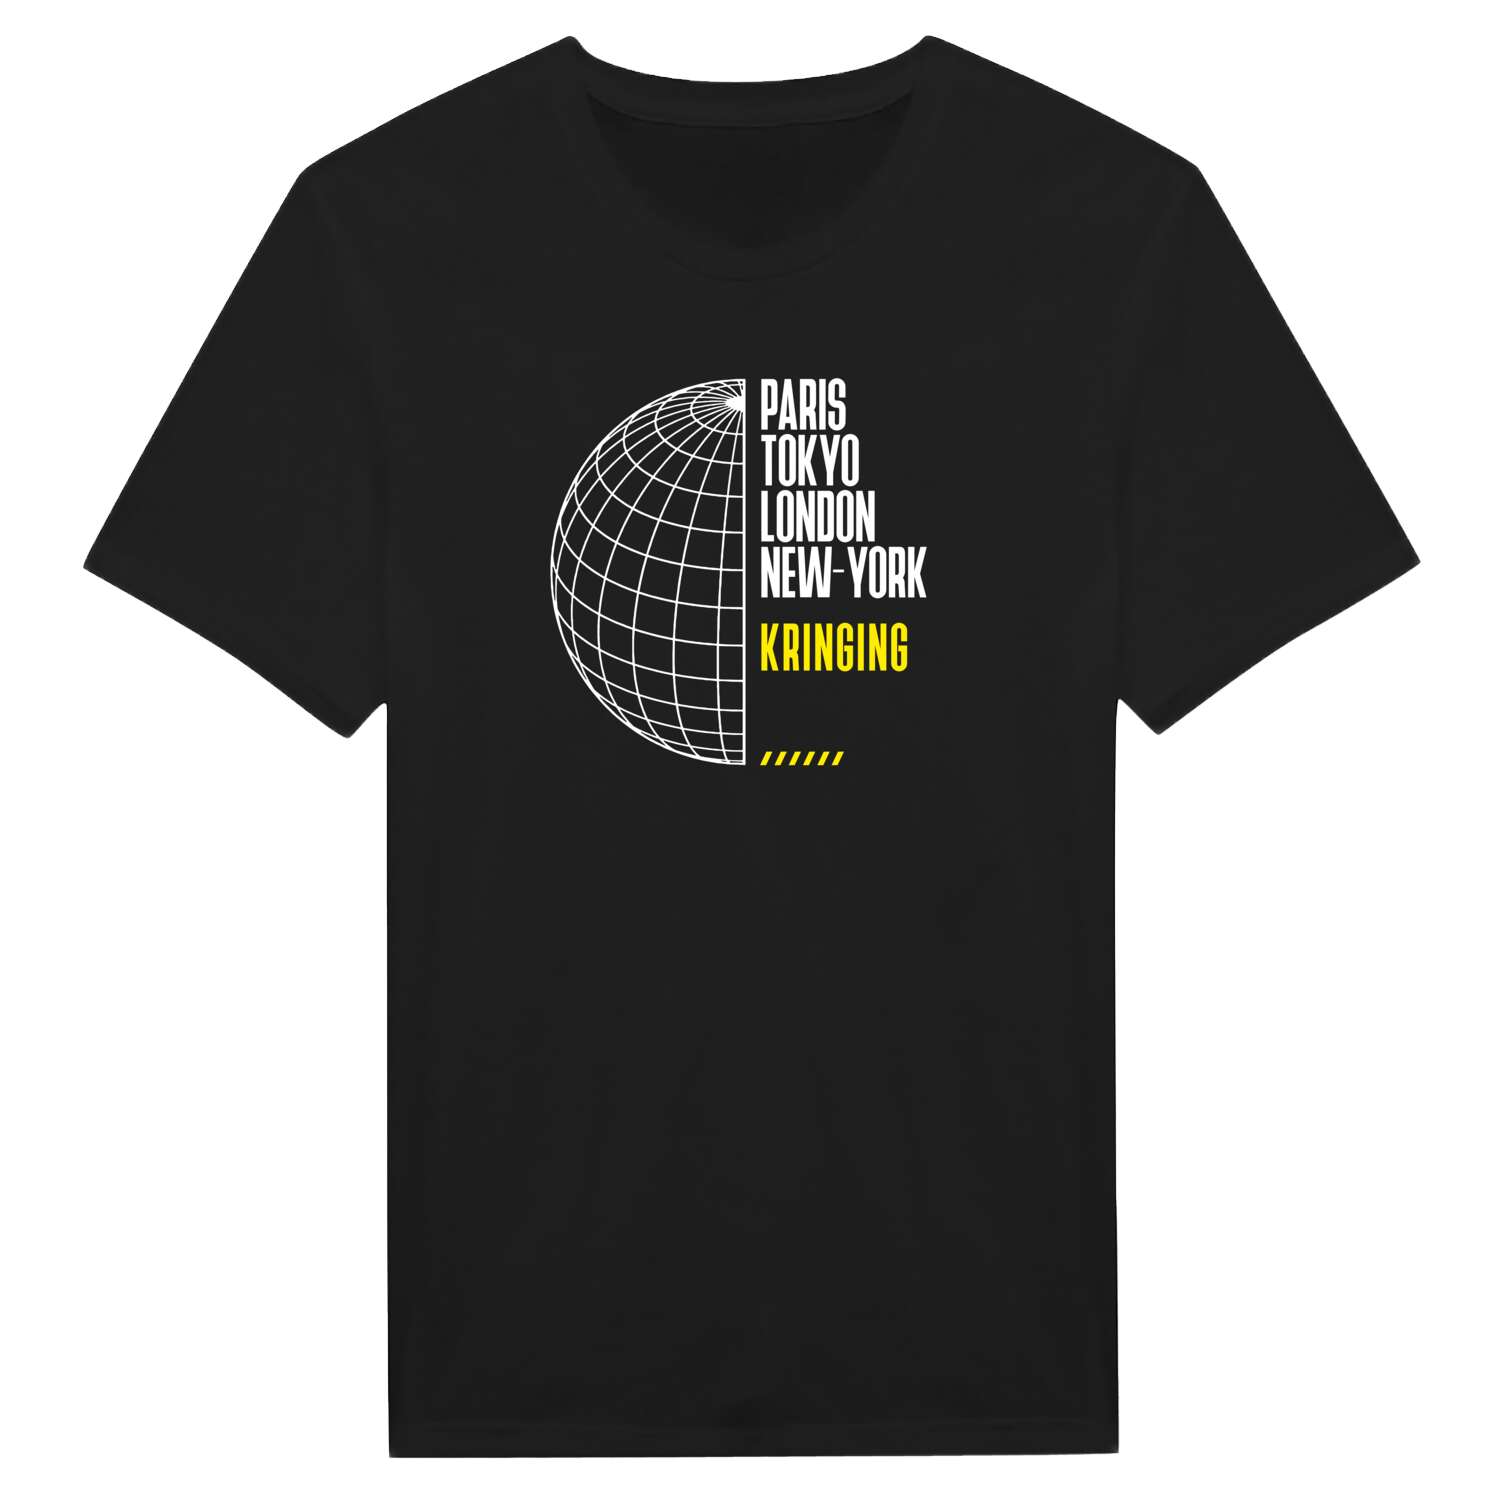 Kringing T-Shirt »Paris Tokyo London«